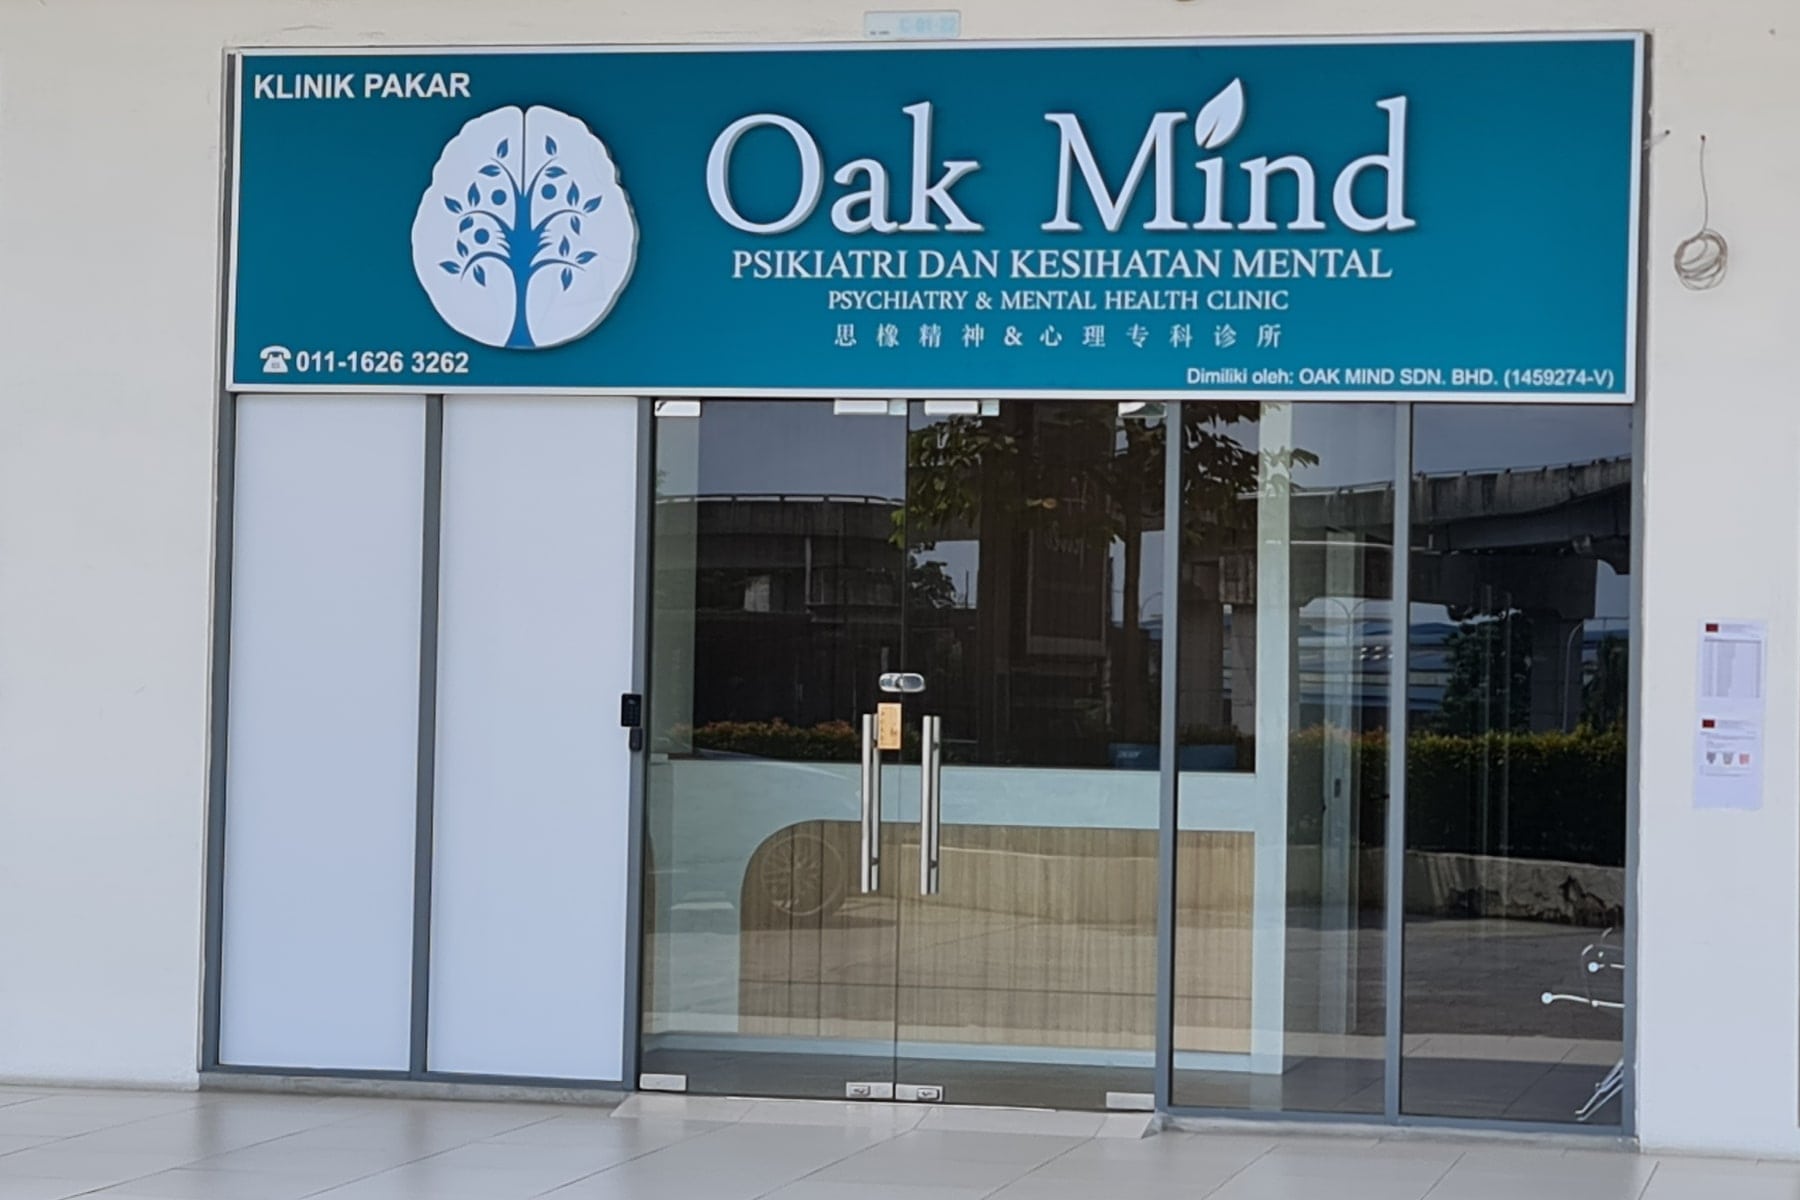 Oak Mind Psychiatry & Mental Health Clinic